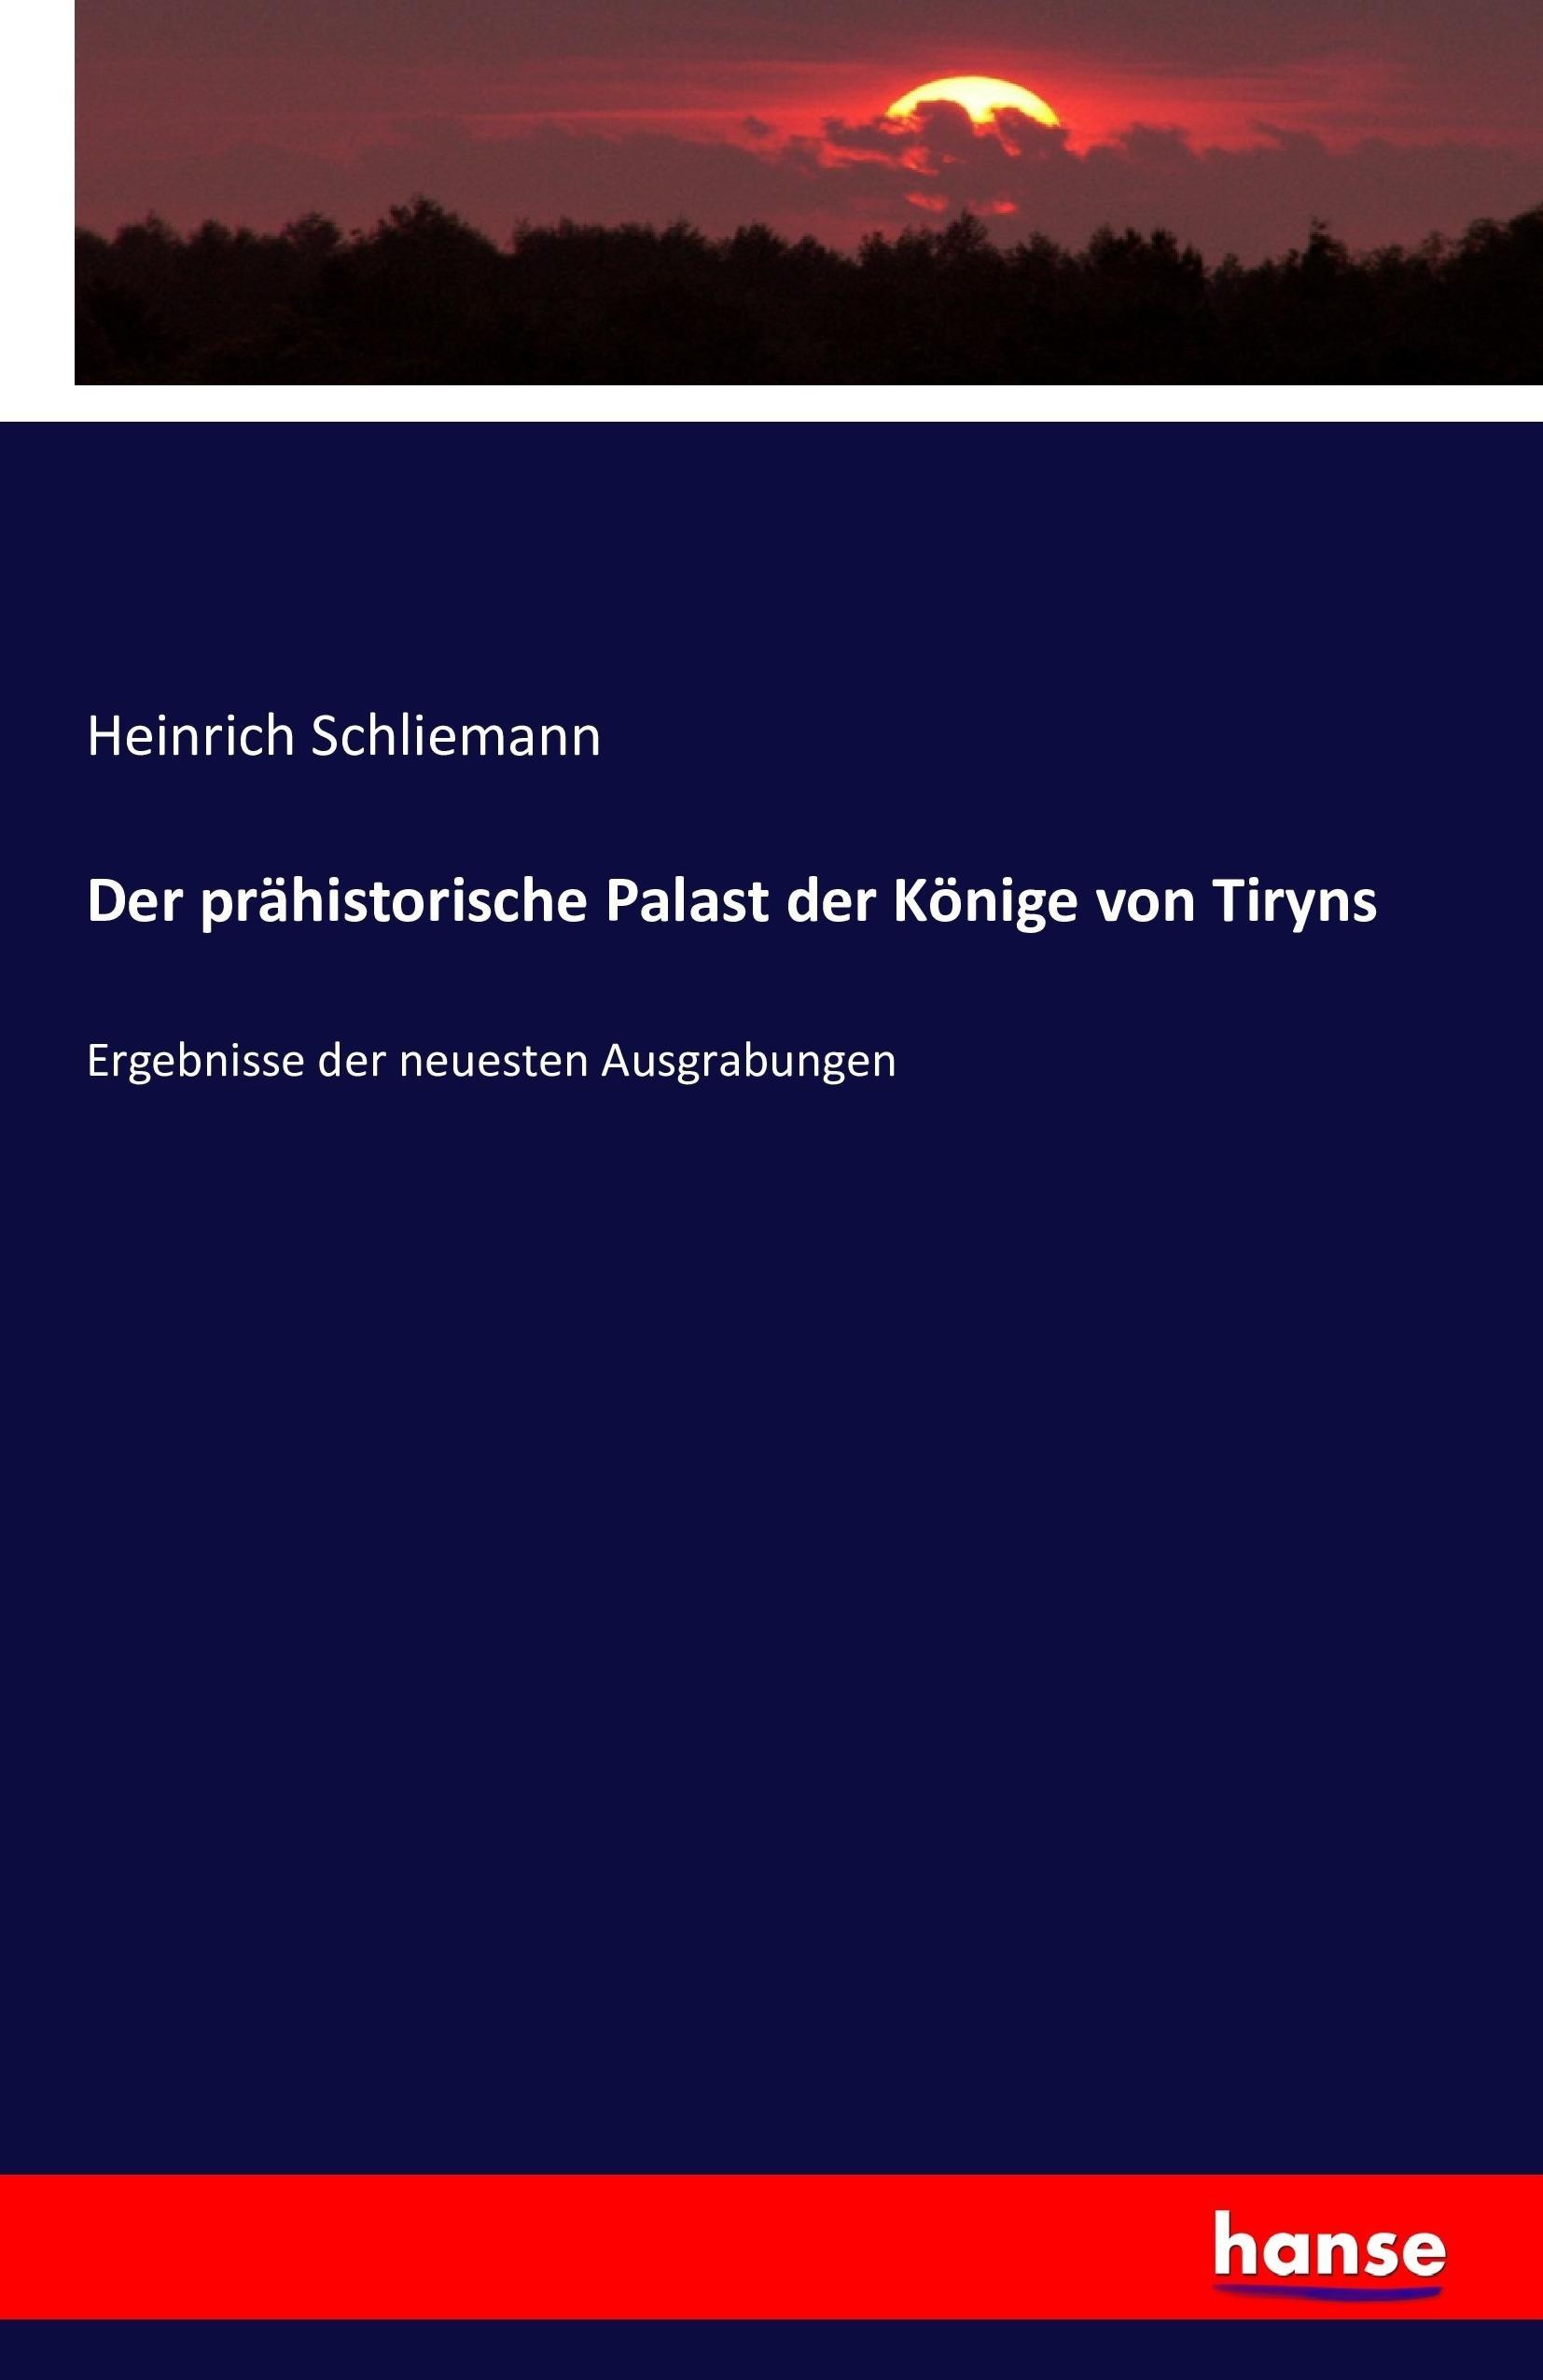 Der praehistorische Palast der Koenige von Tiryns - Schliemann, Heinrich